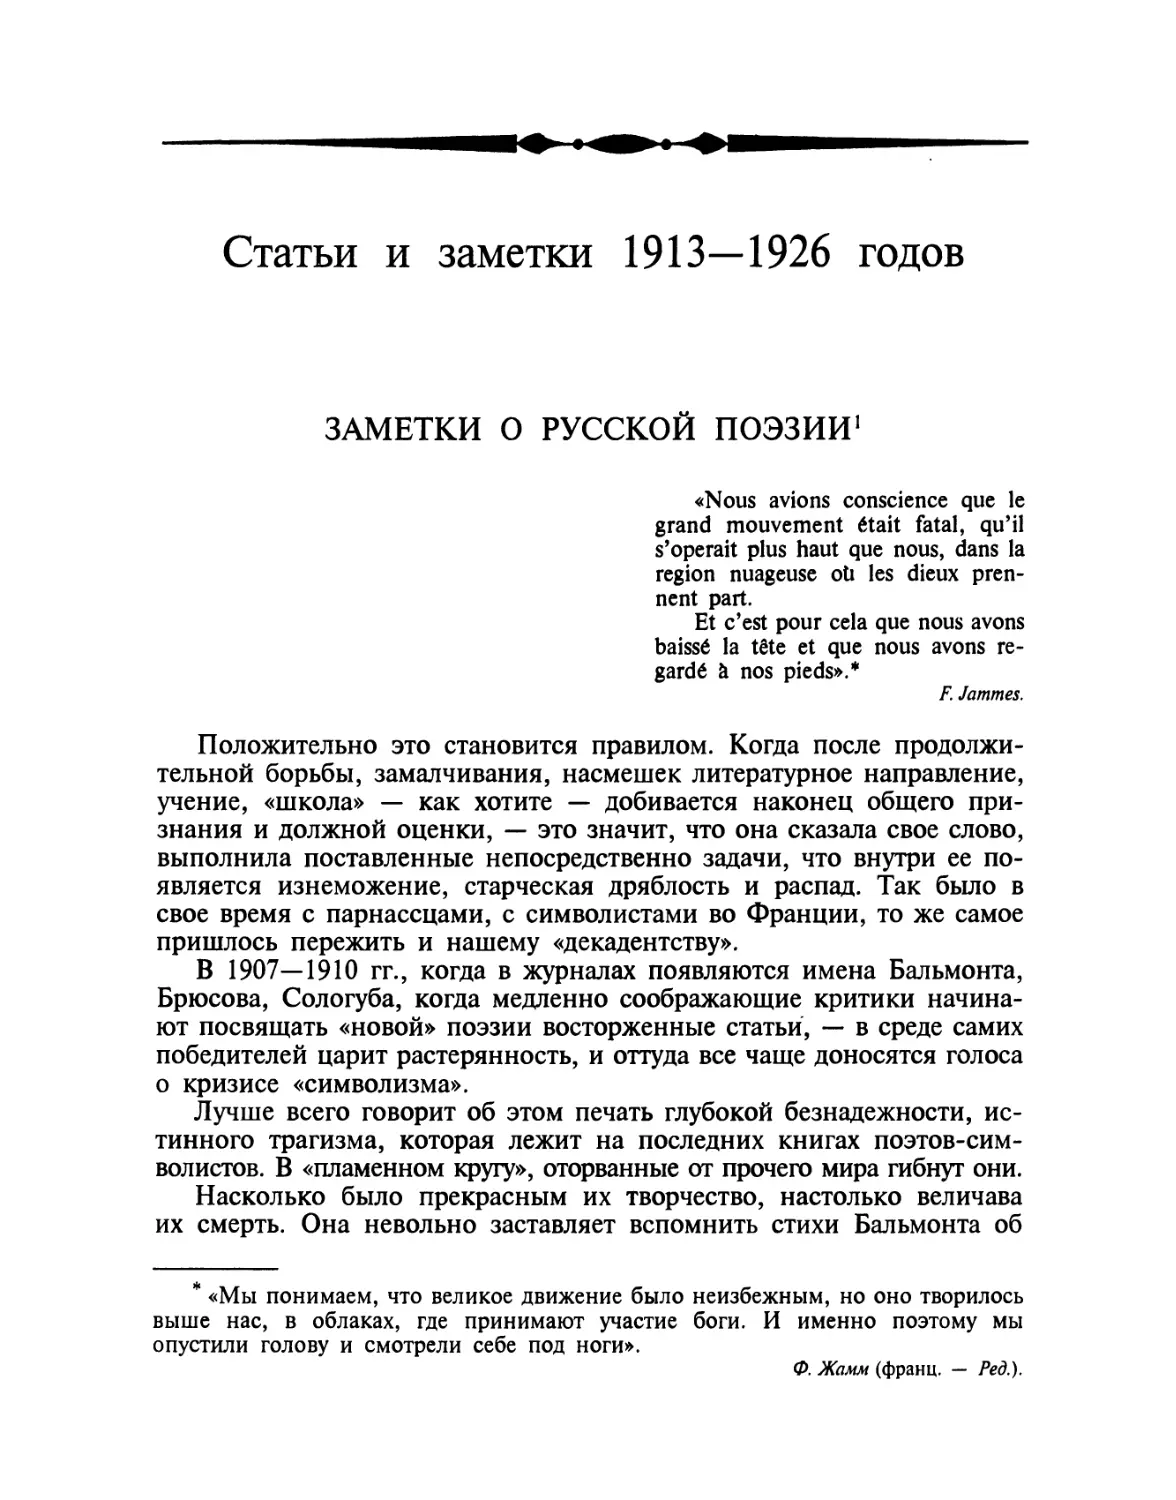 Статьи и заметки 1913—1926 годов